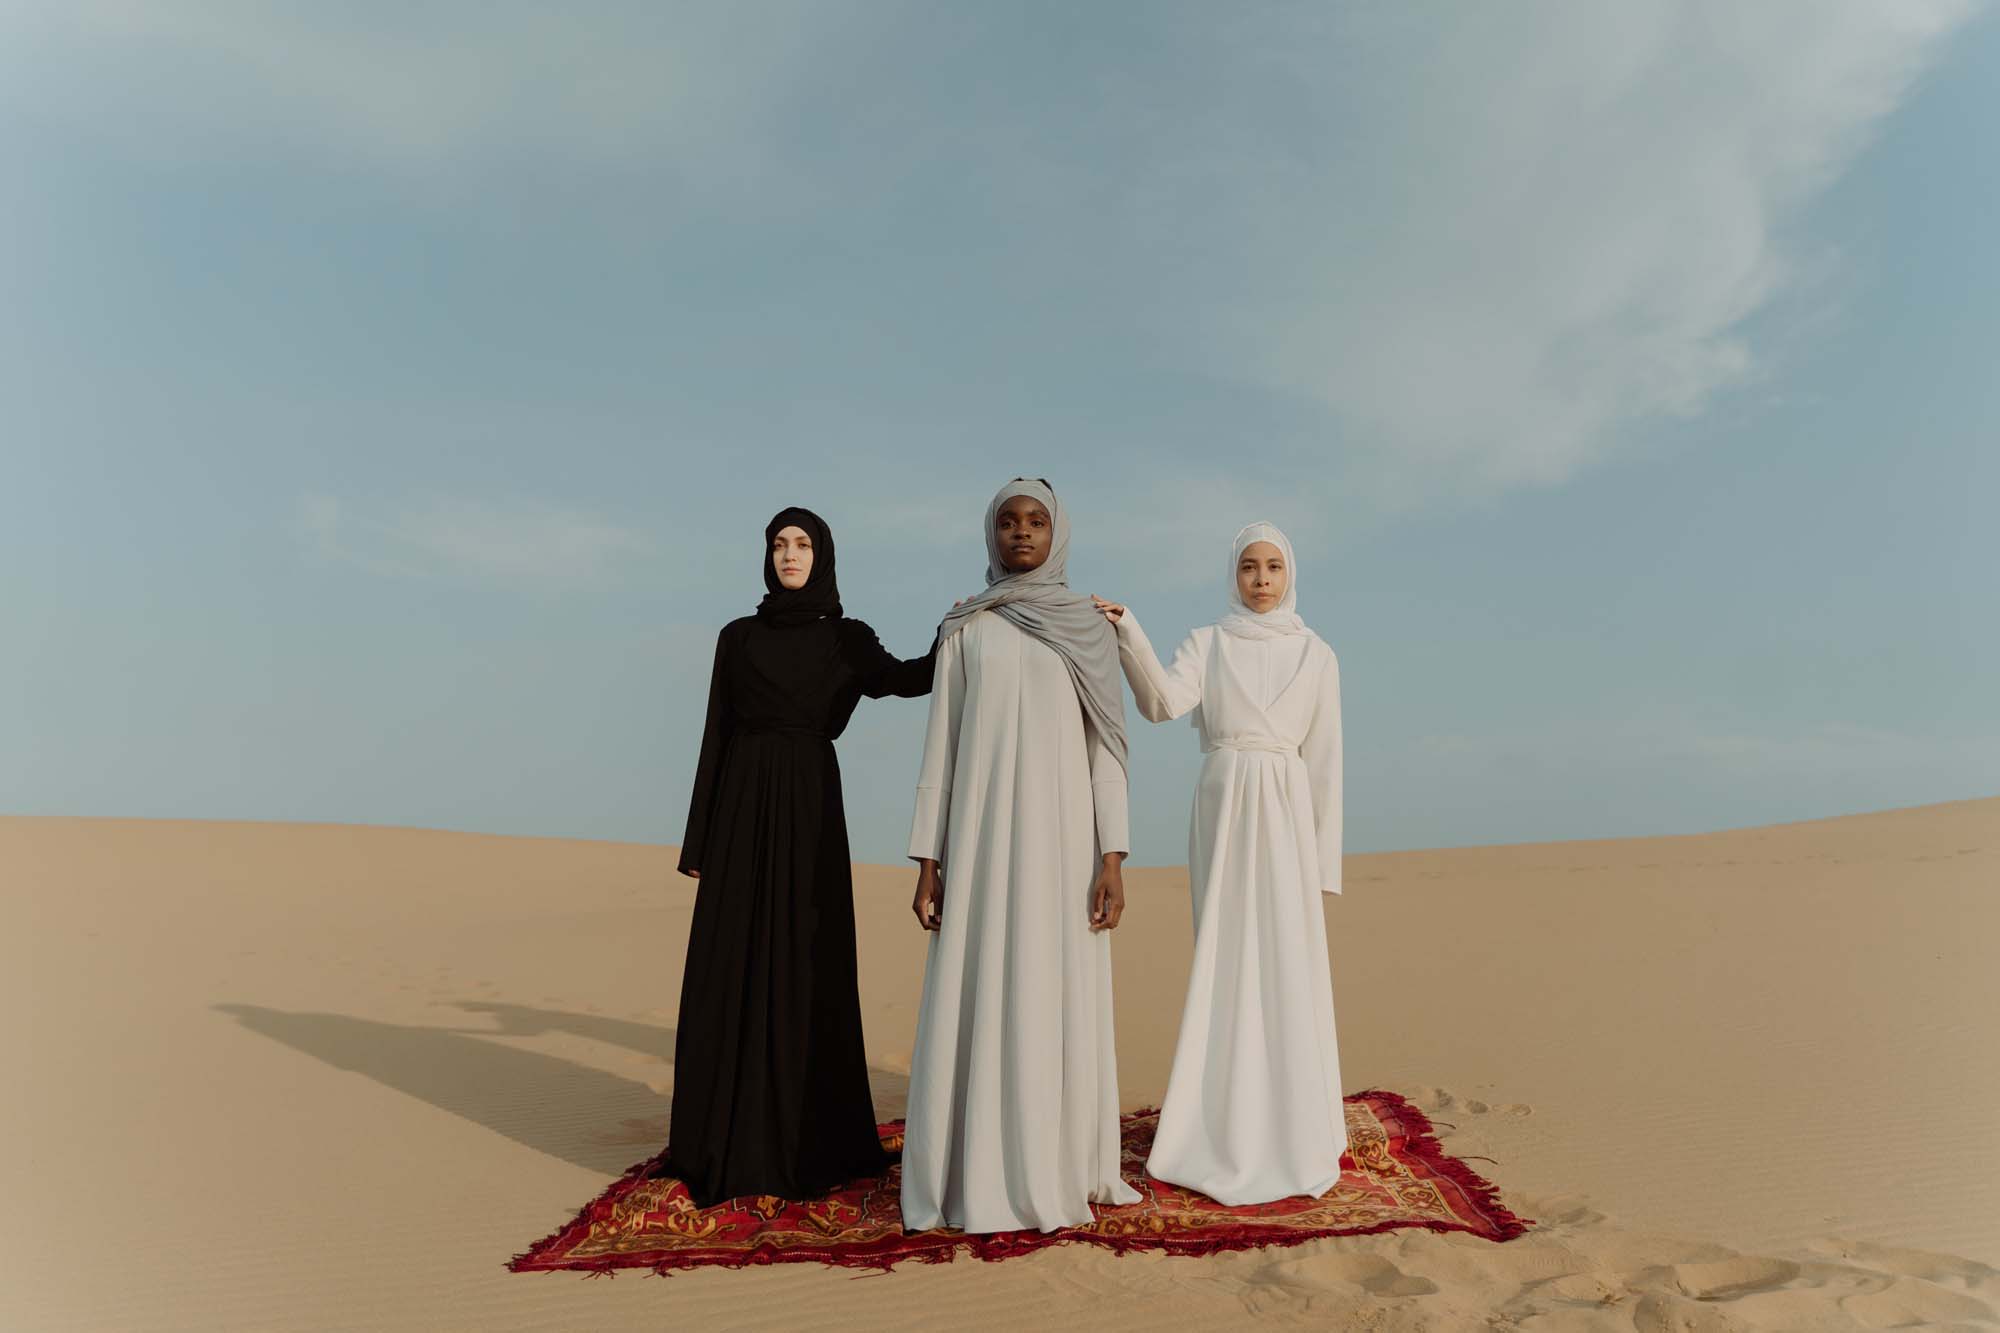 Three women in the desert